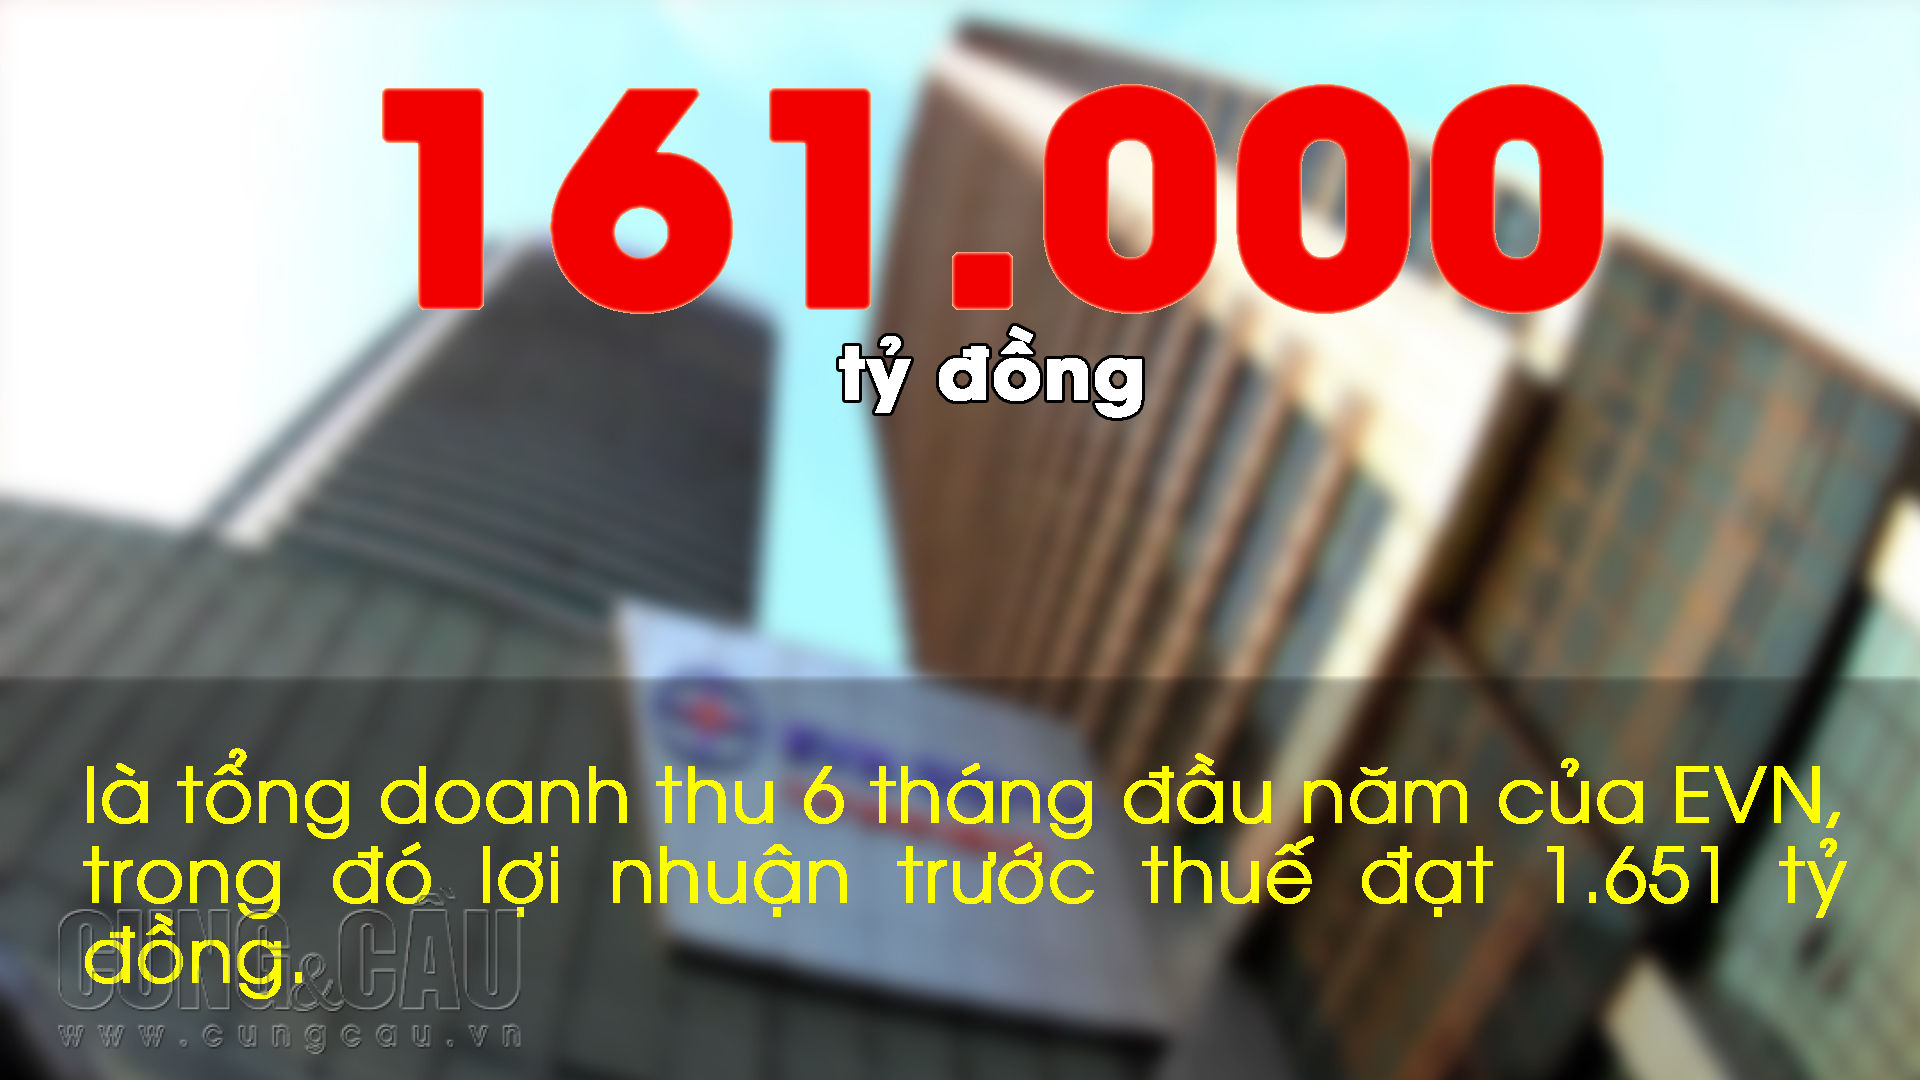 Những con số ấn tượng trong tuần: TP.HCM muốn chi 1.500 tỷ đồng xây nhà hát ở Thủ Thiêm